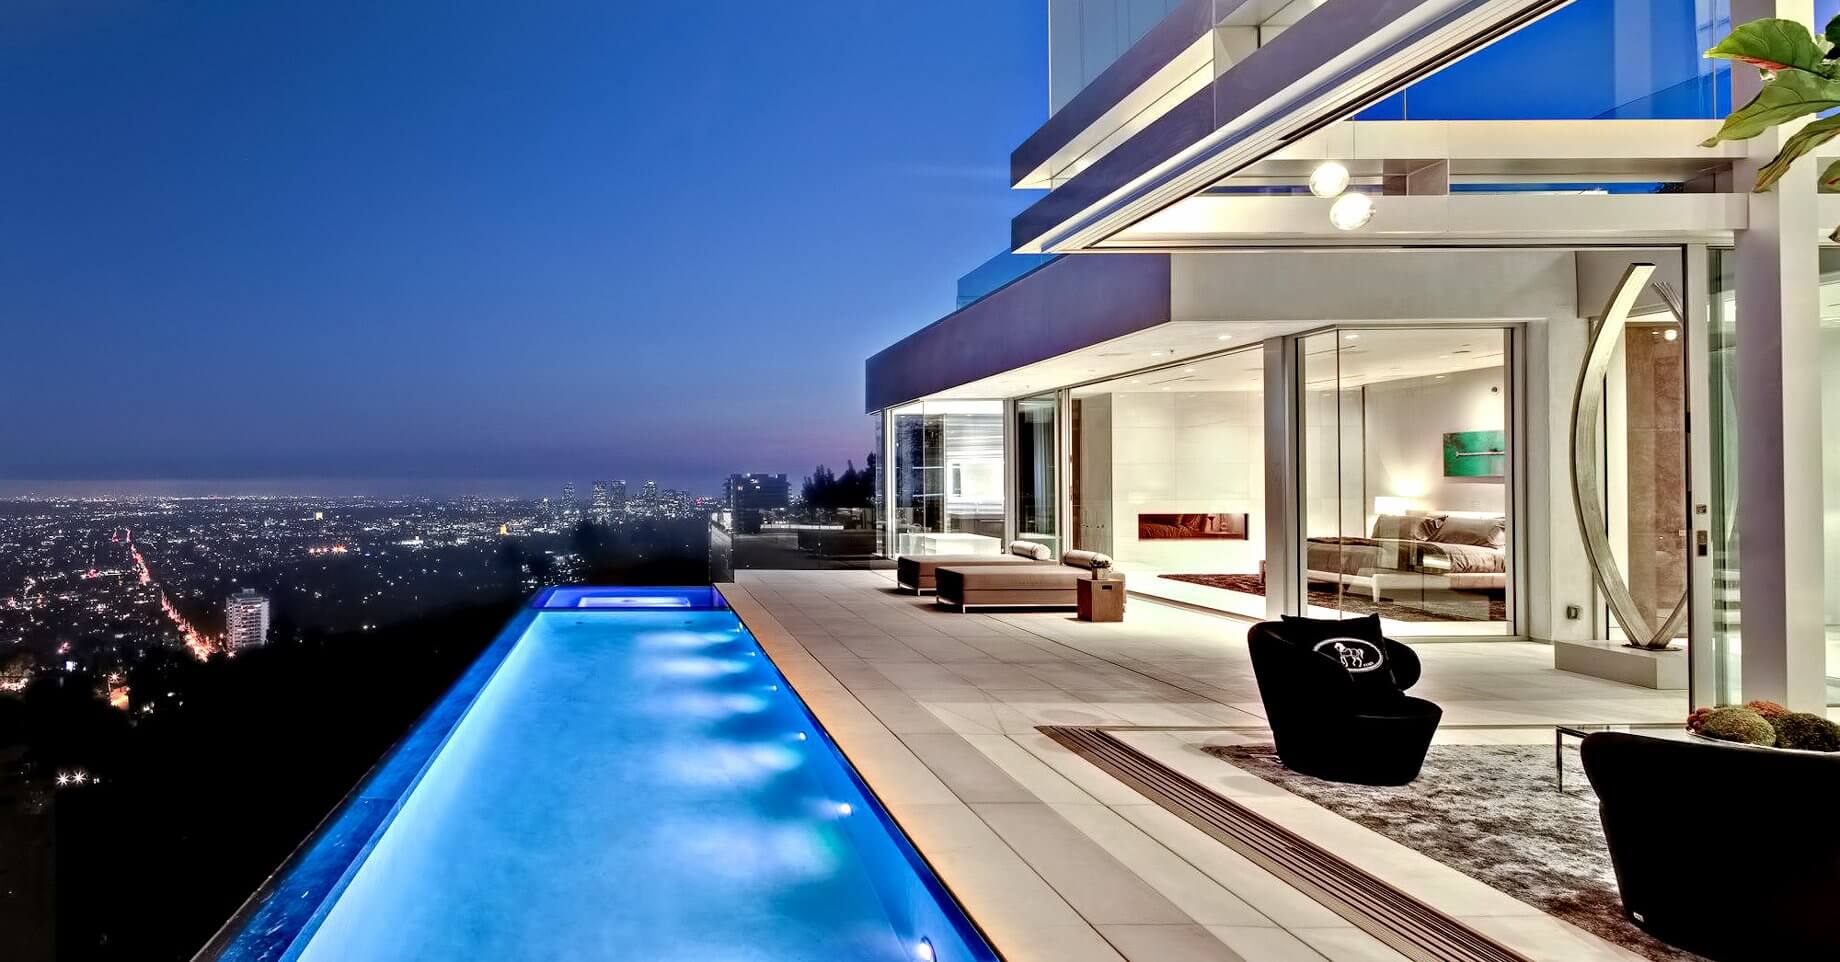 NIce! Luxury Poolside Home in Los Angeles